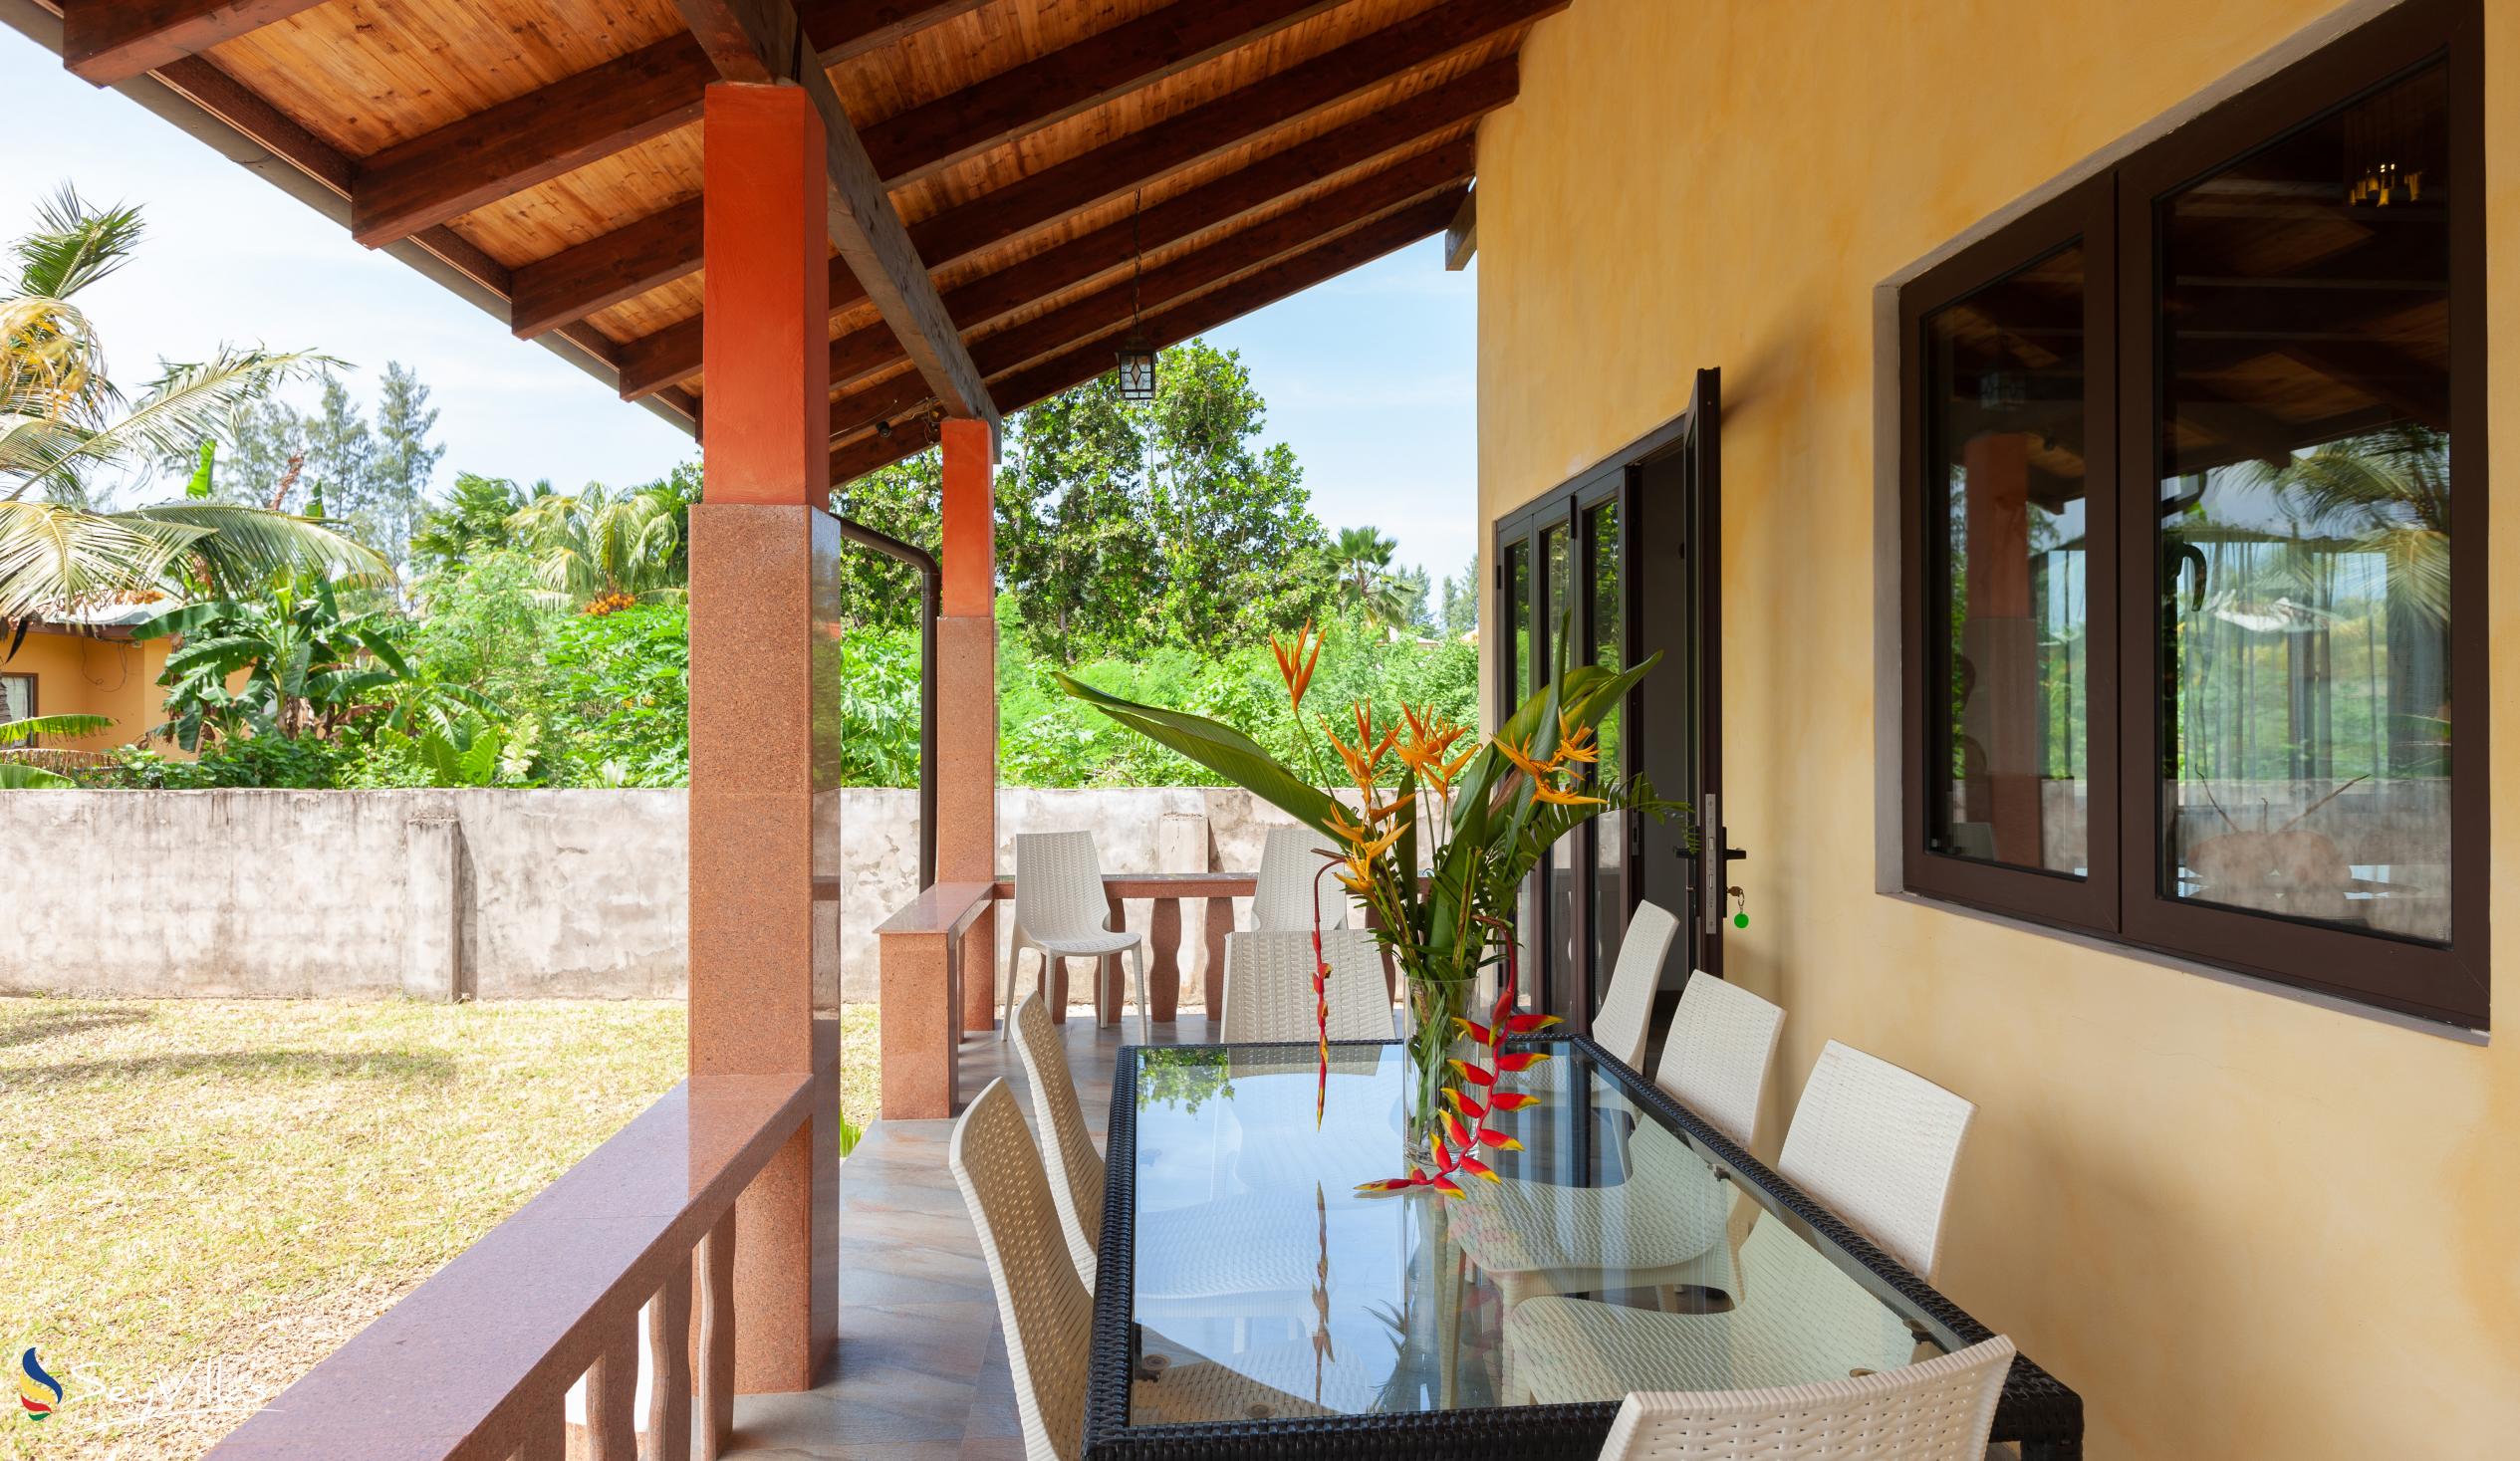 Foto 17: Villa Sole - Aussenbereich - Praslin (Seychellen)